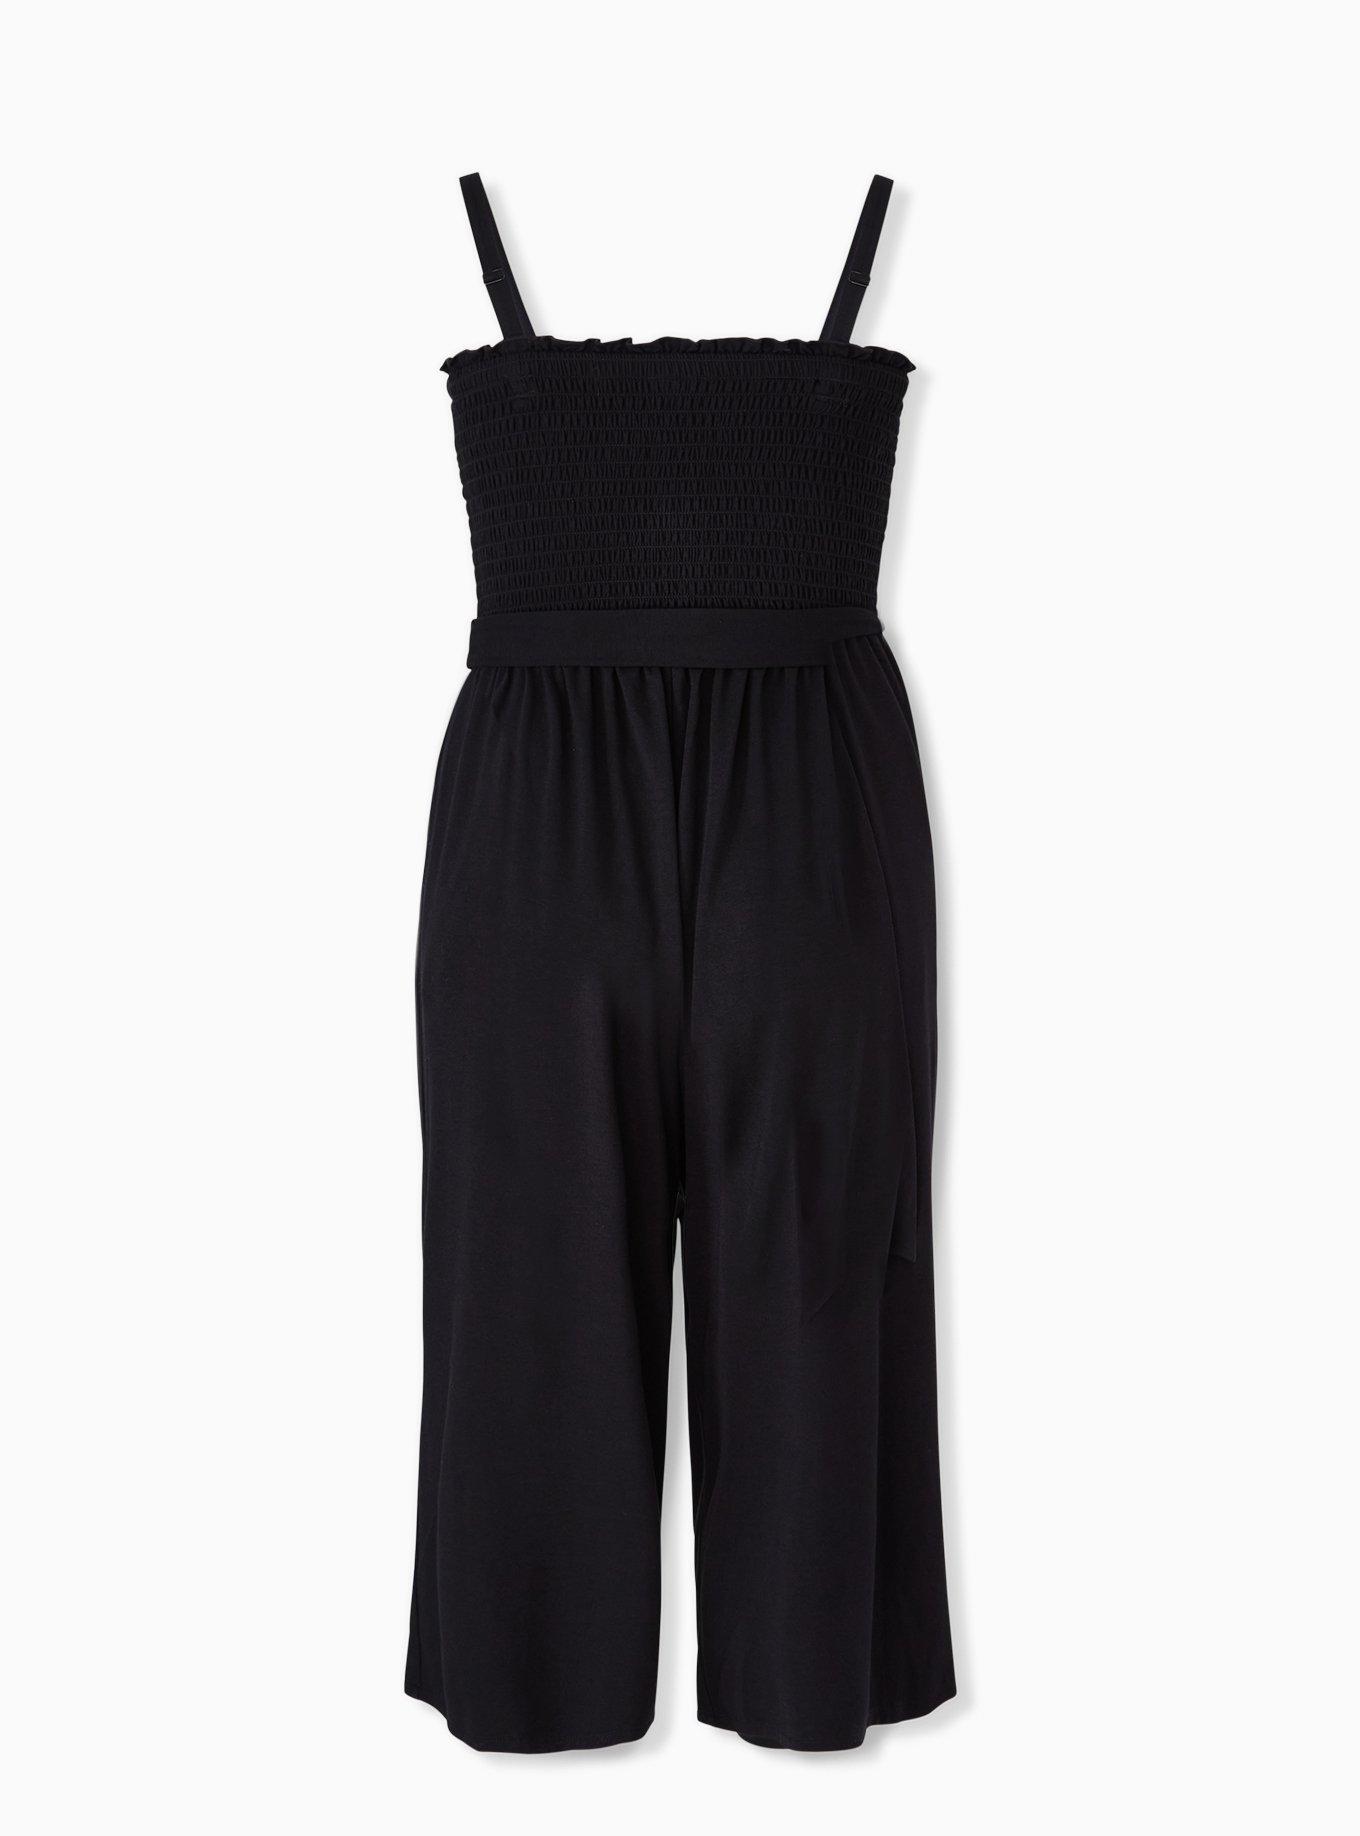 Plus Size - Super Soft Black Smocked Culotte Jumpsuit - Torrid